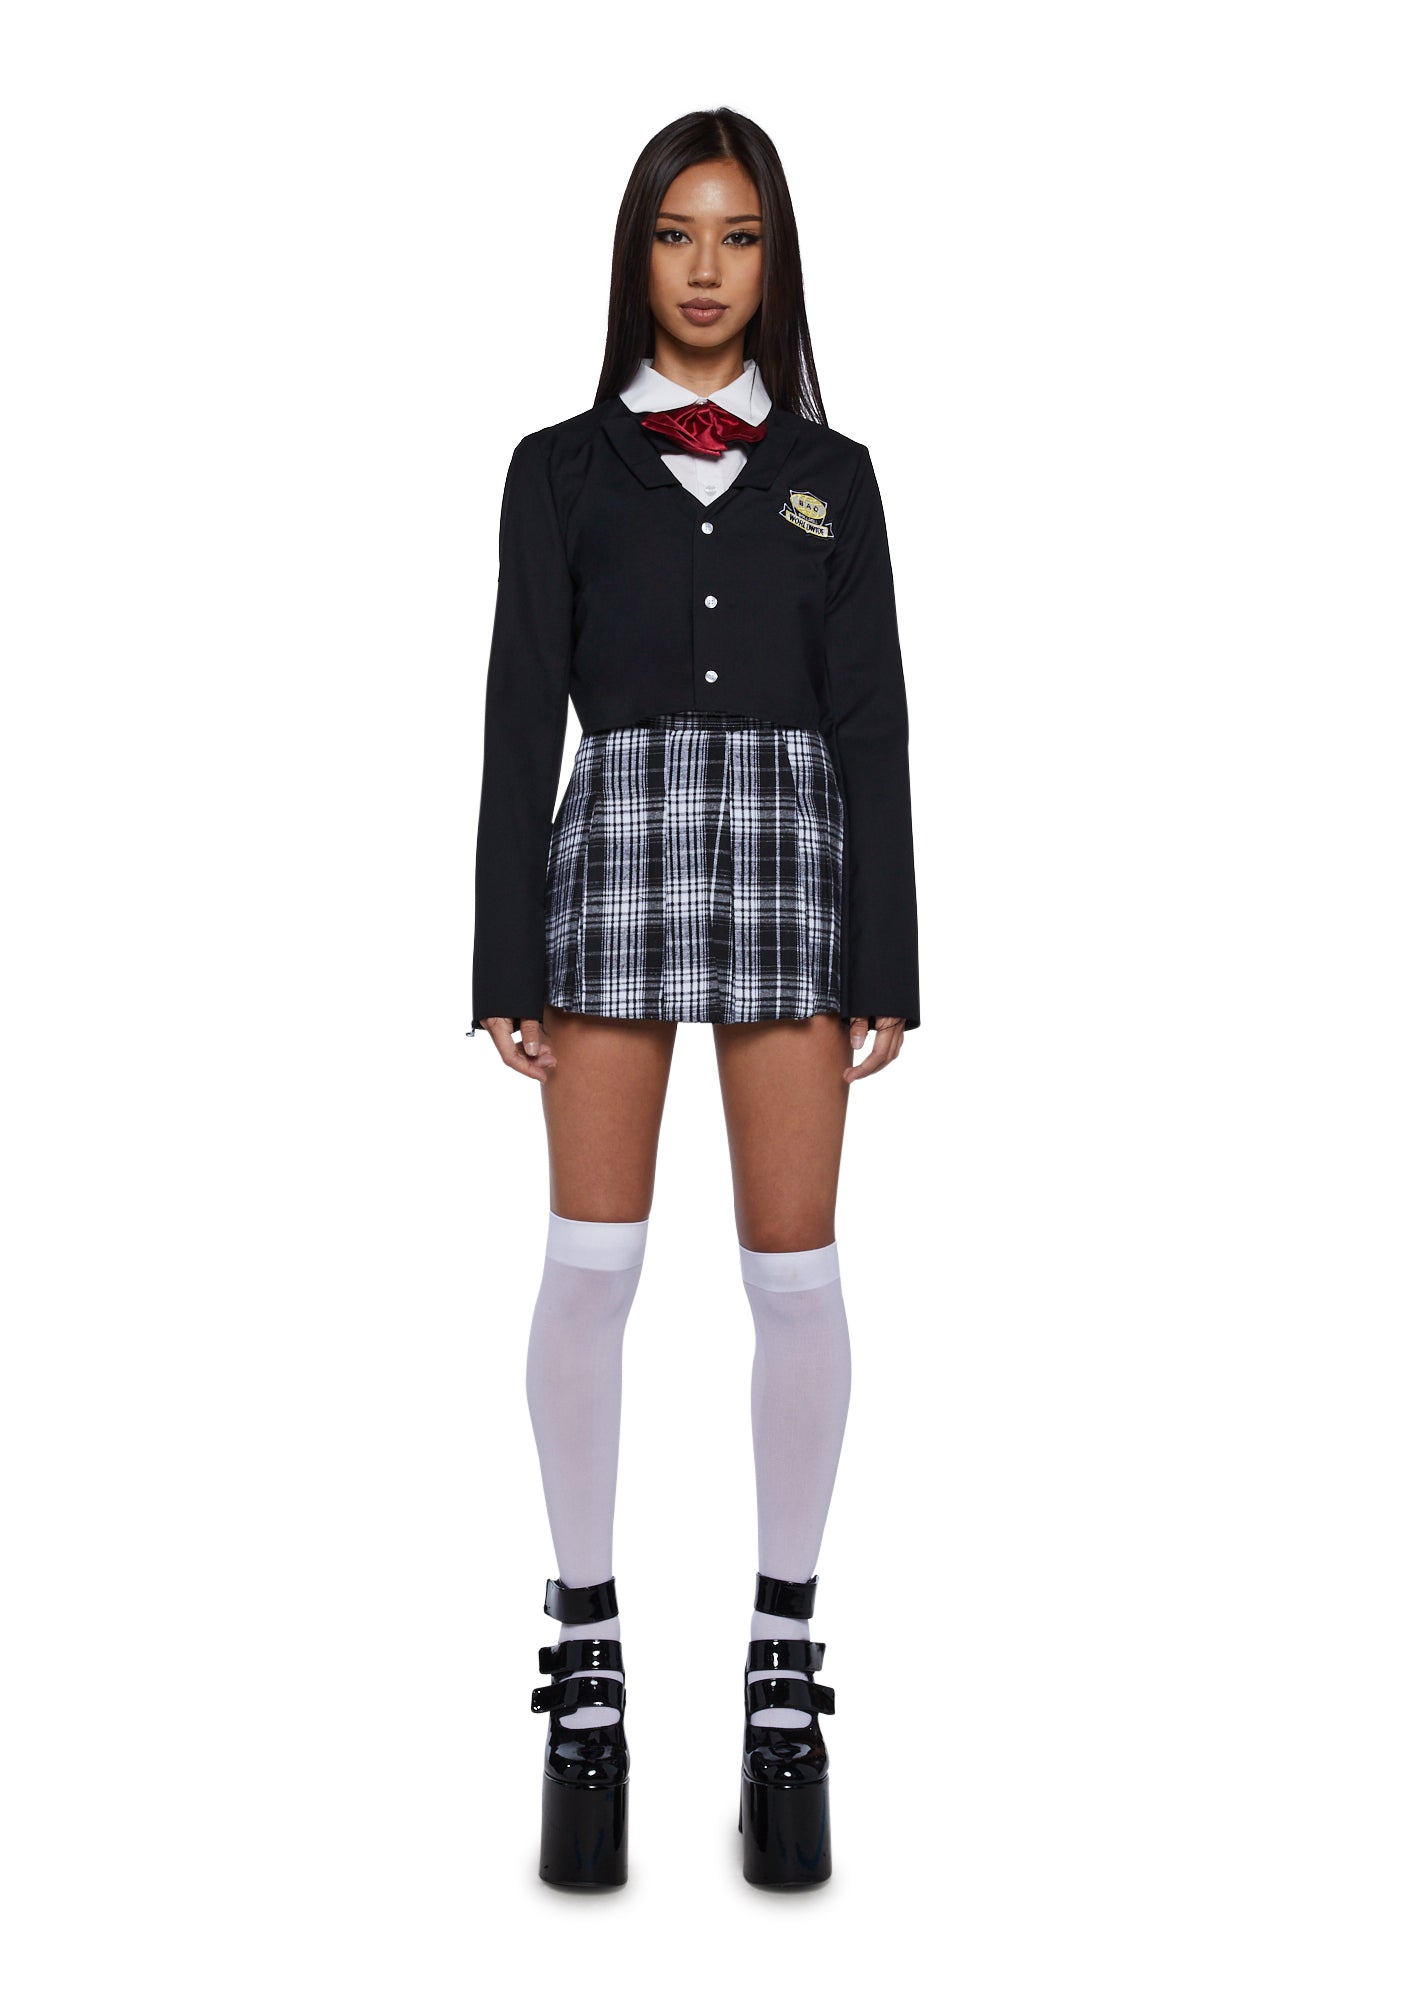 Gogo Yubari from Kill Bill | Sadistic School Girl Halloween Costume – Dolls  Kill